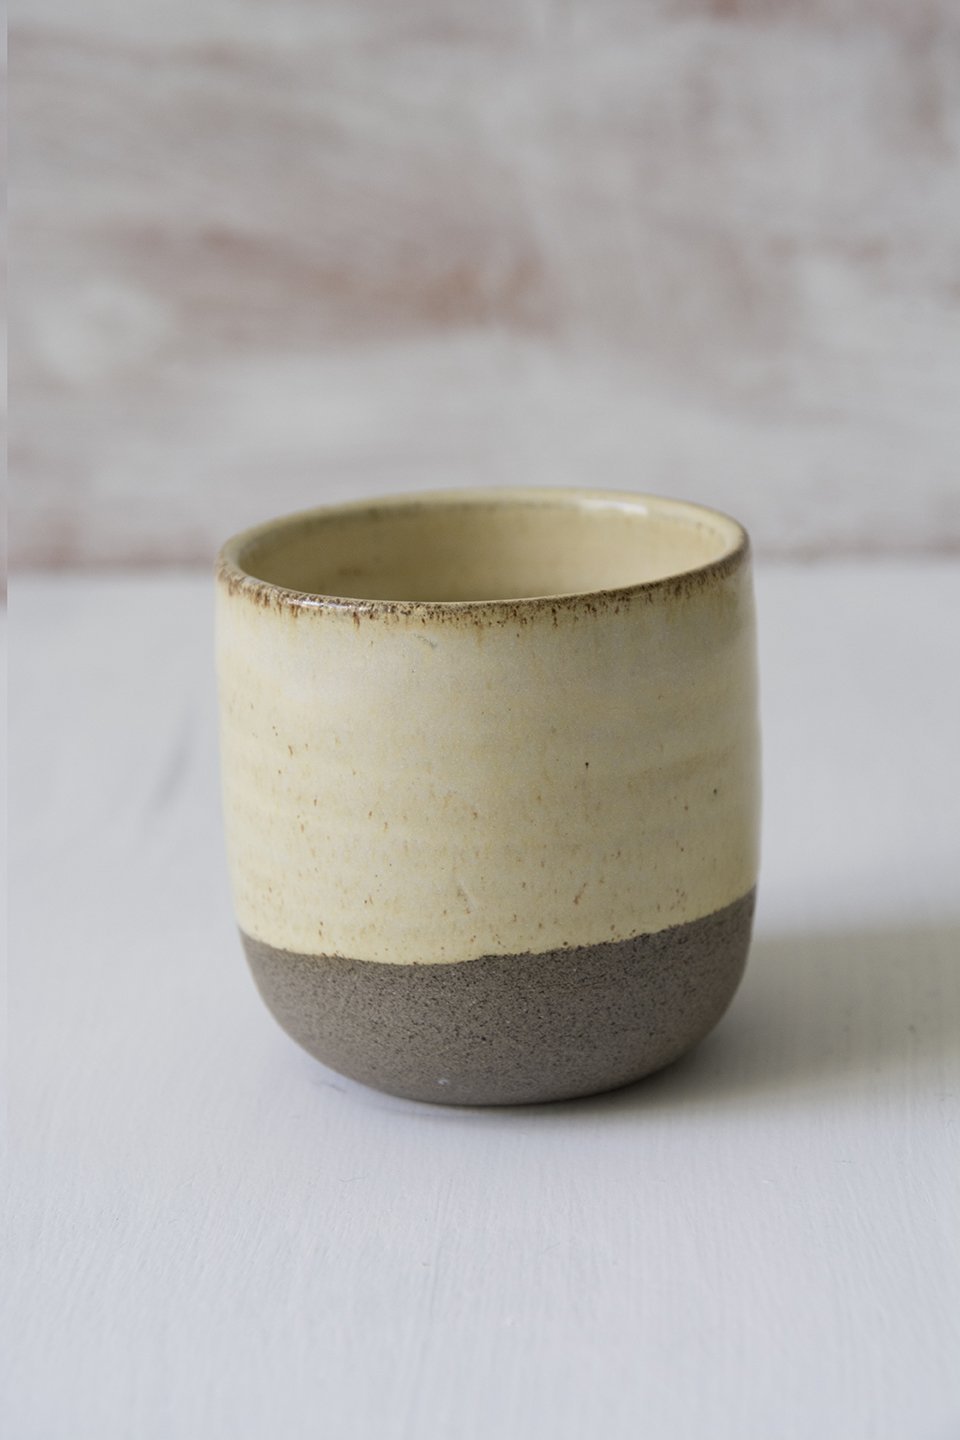 Handmade White Small Ceramic Espresso Mug